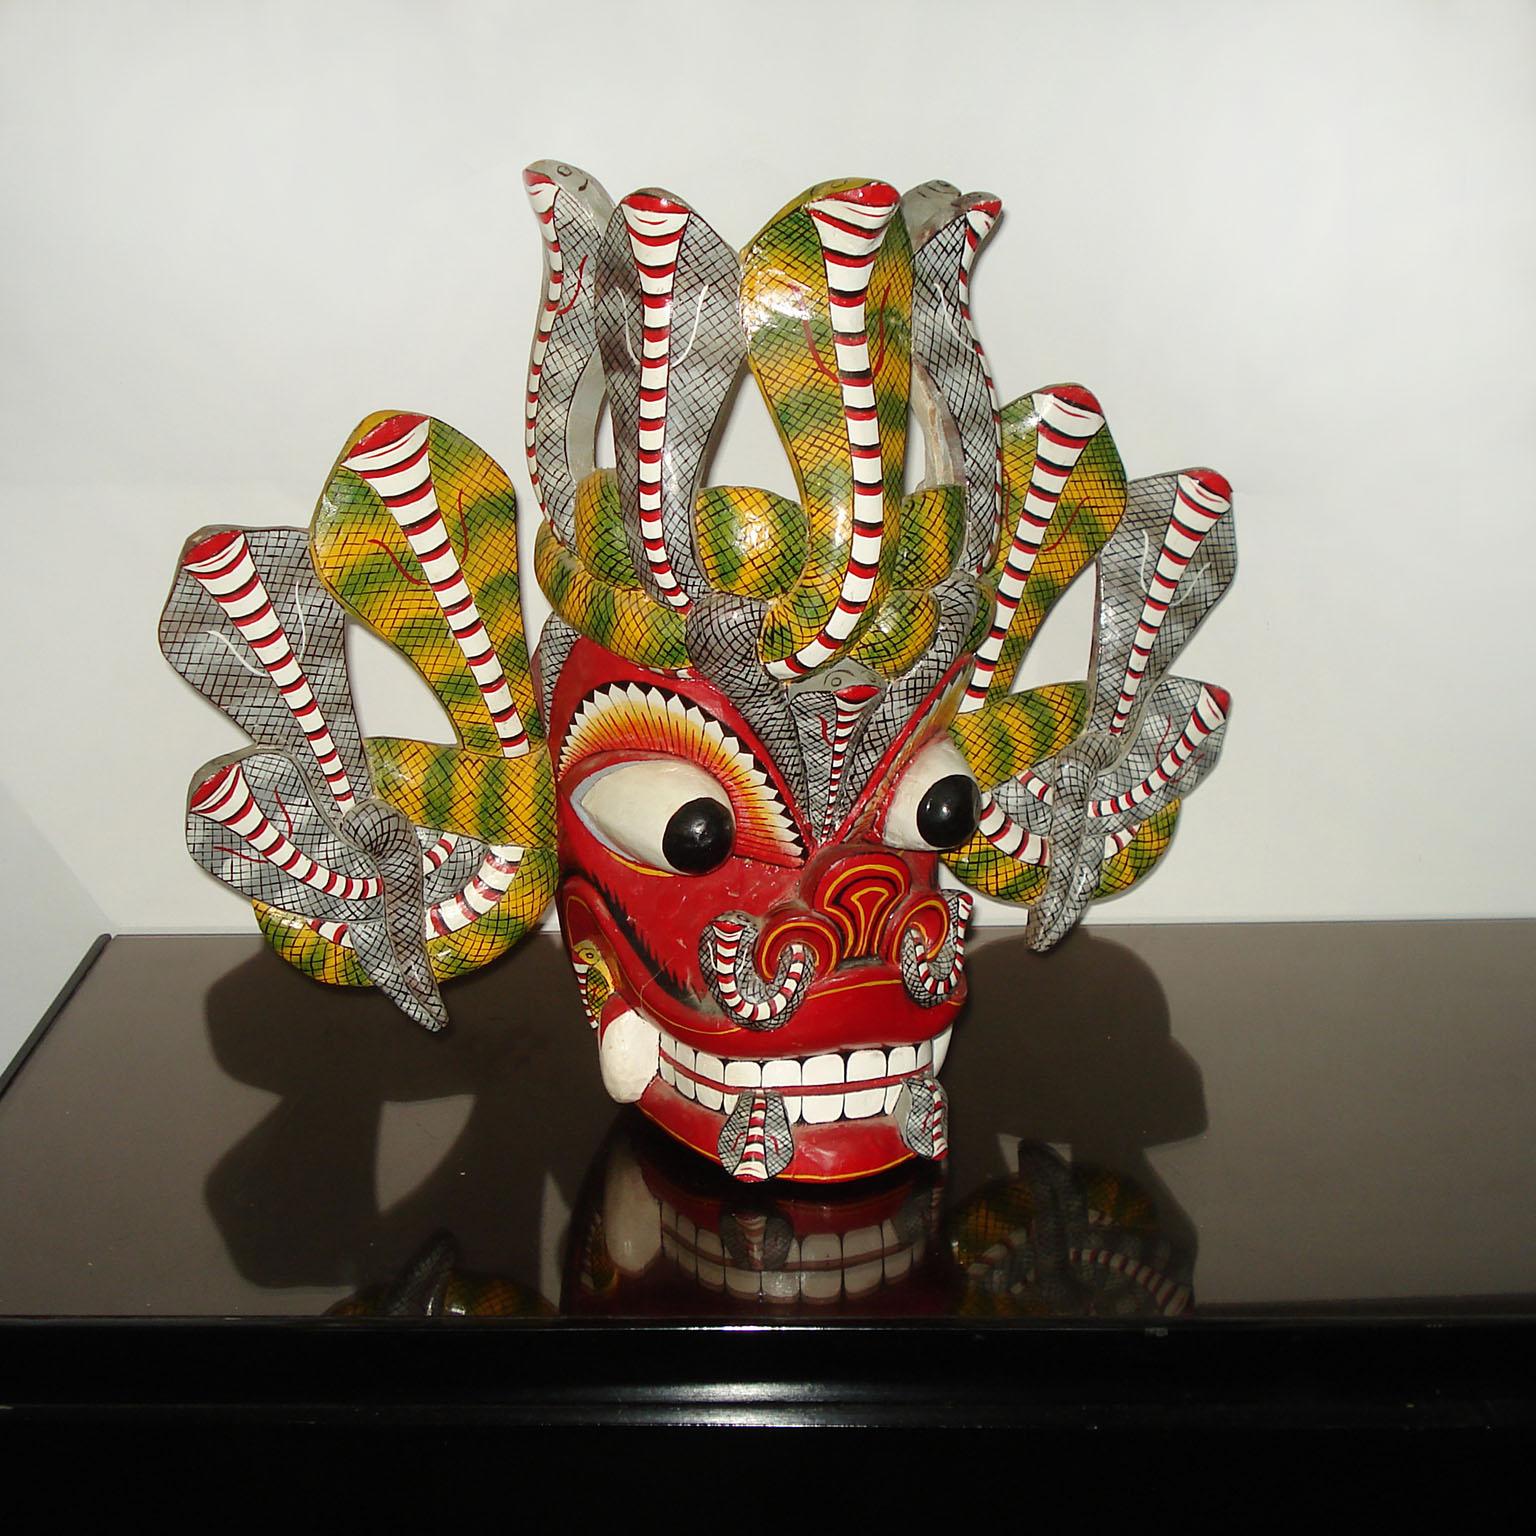 Große balinesische Barong geschnitzt und handbemalt Holz Tanzmaske eines verzierten bunten mythologischen Kreatur.
Gekonnt von Hand geschnitzt, mit großen wulstigen Augen, großen Zähnen und zwei Schlangen, die auf beiden Seiten des Mundes